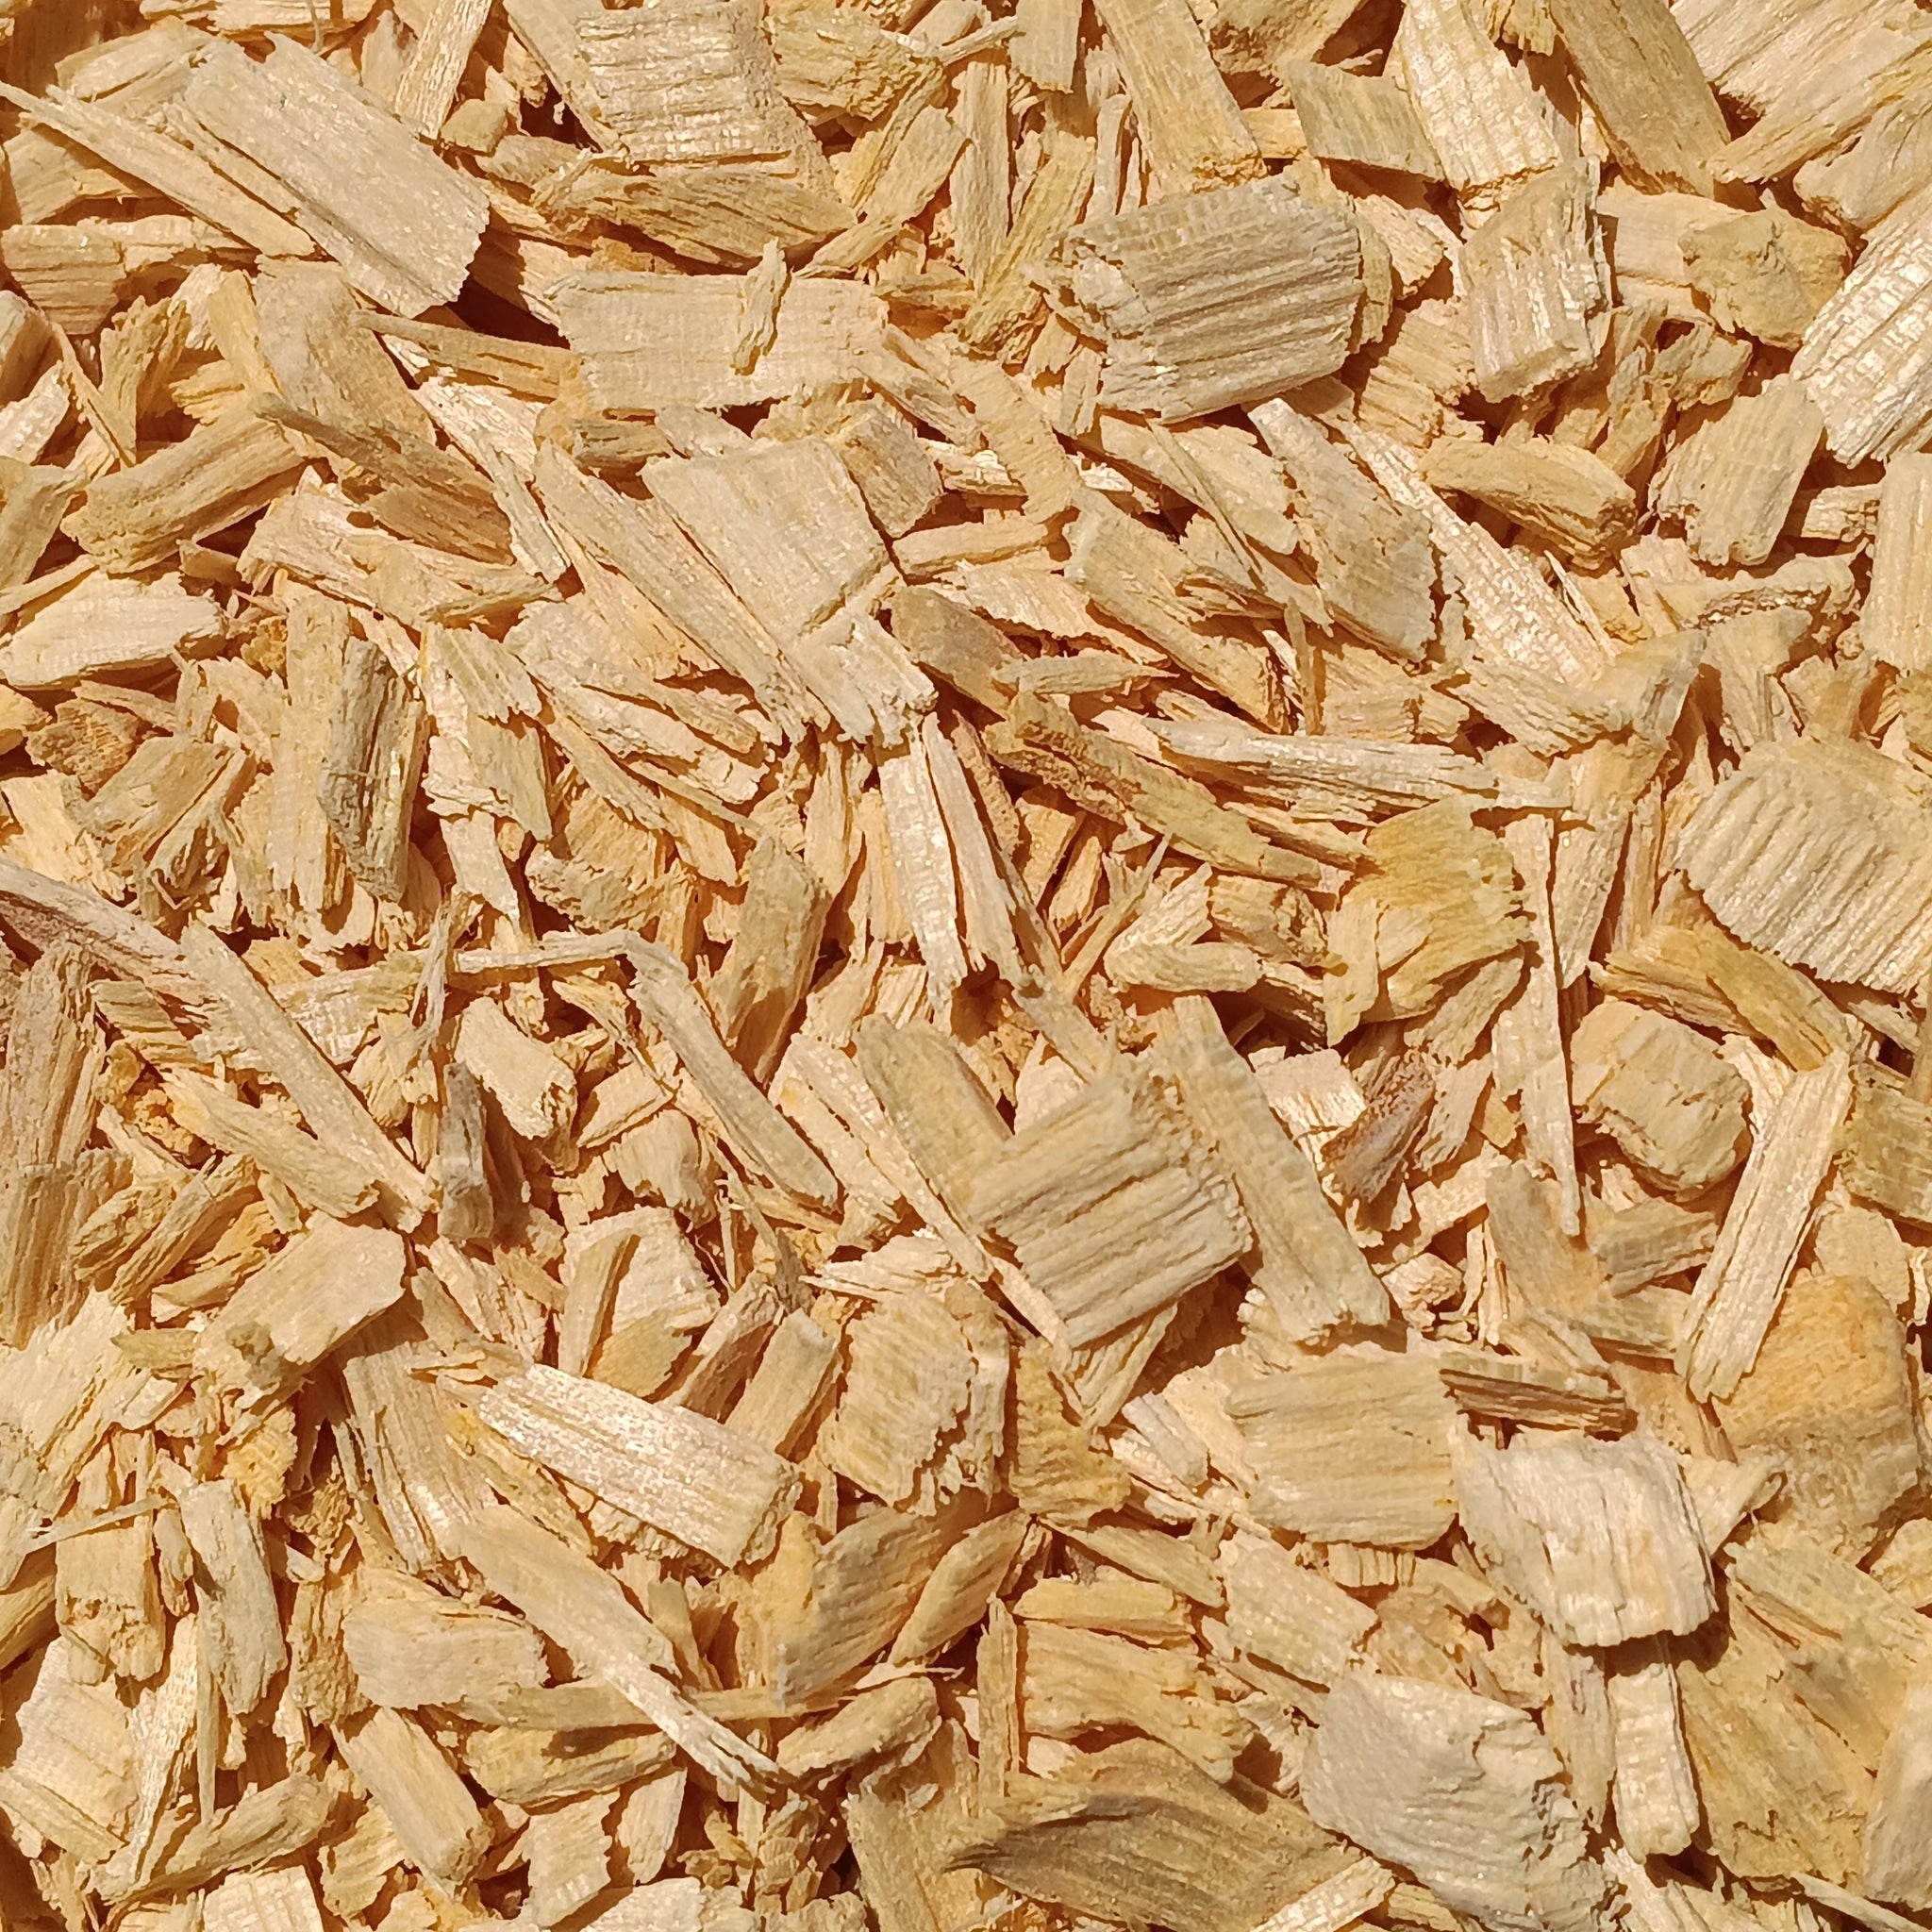 Bitteres Holz (Quassia Amara)